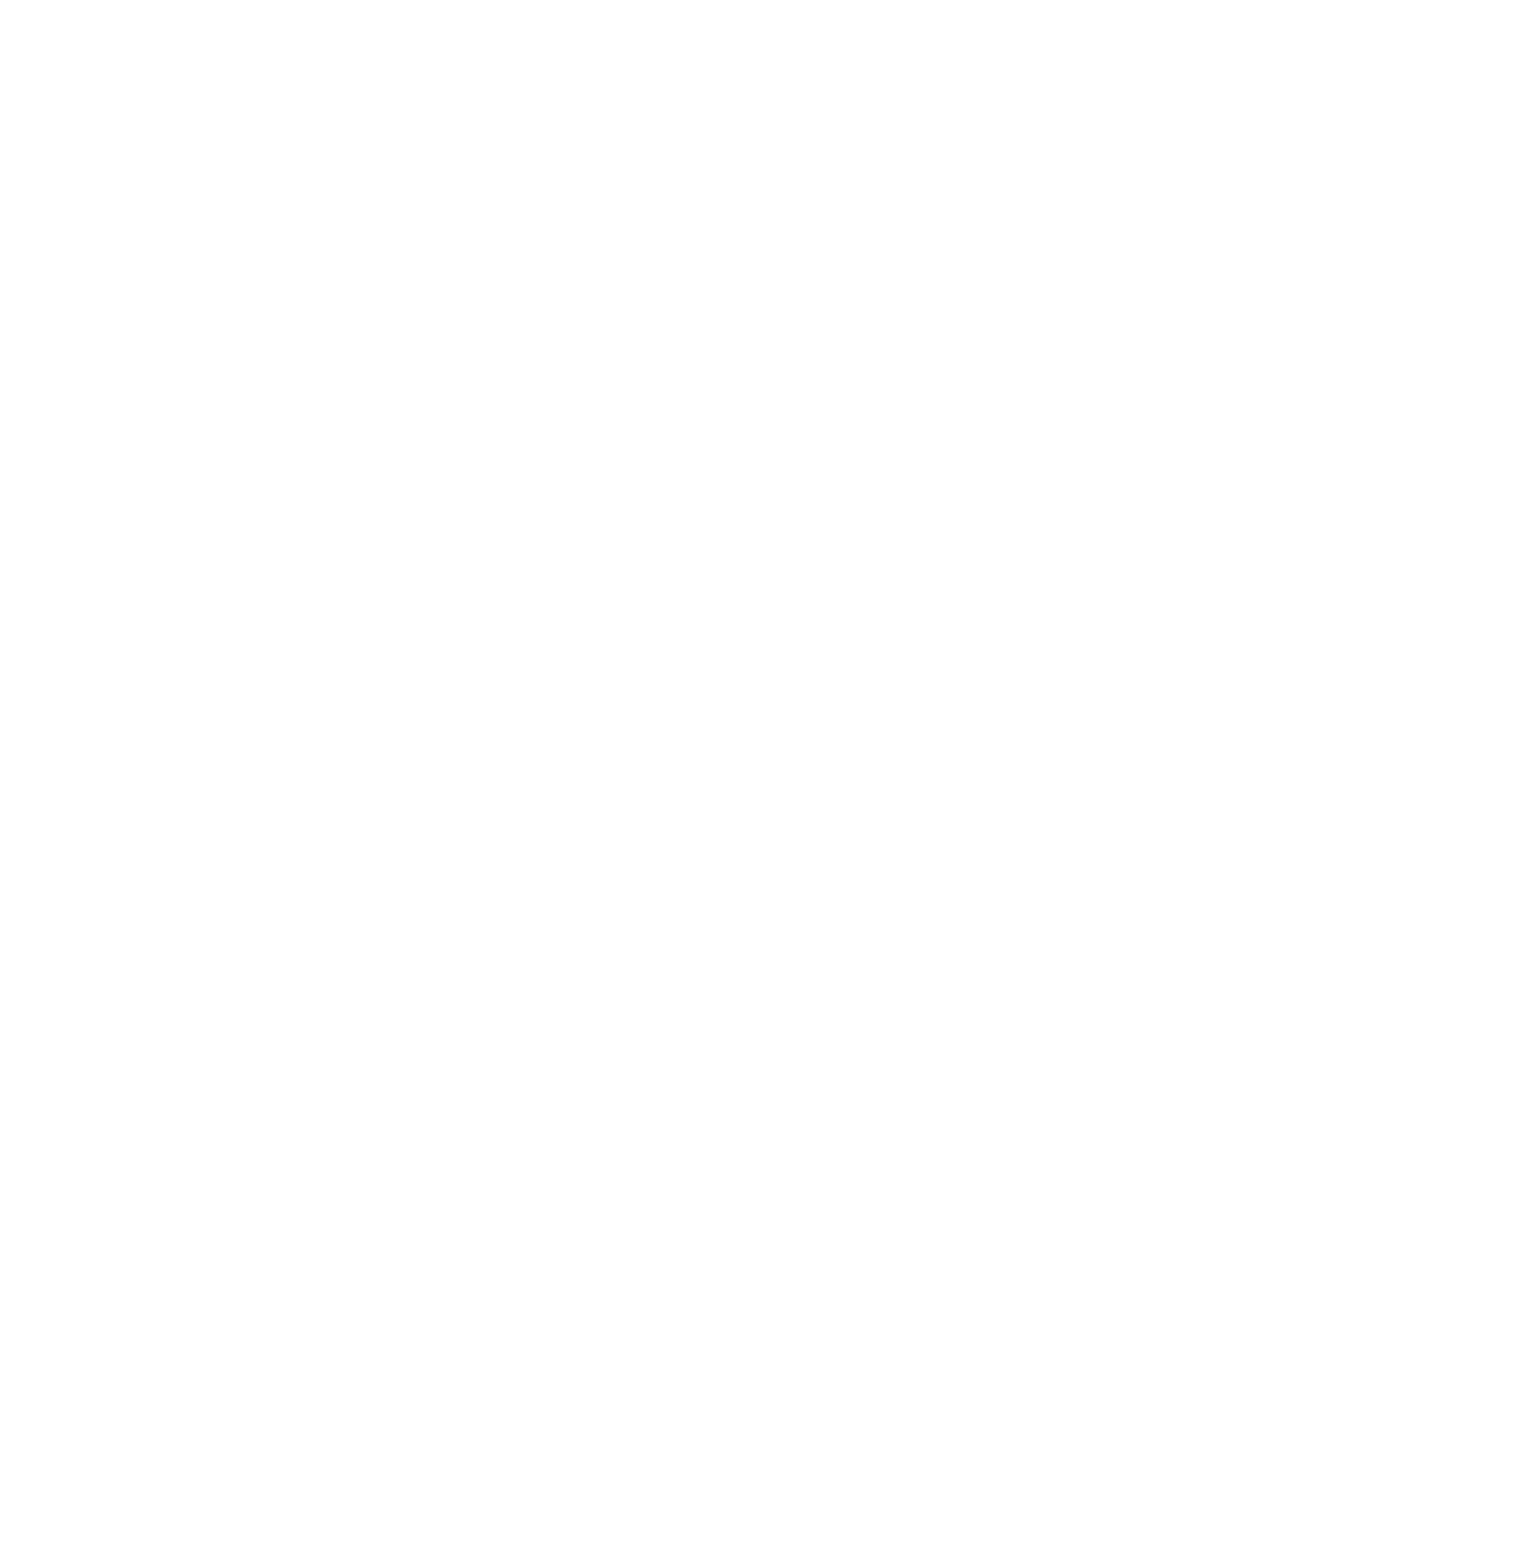 ENGIE logo for dark backgrounds (transparent PNG)